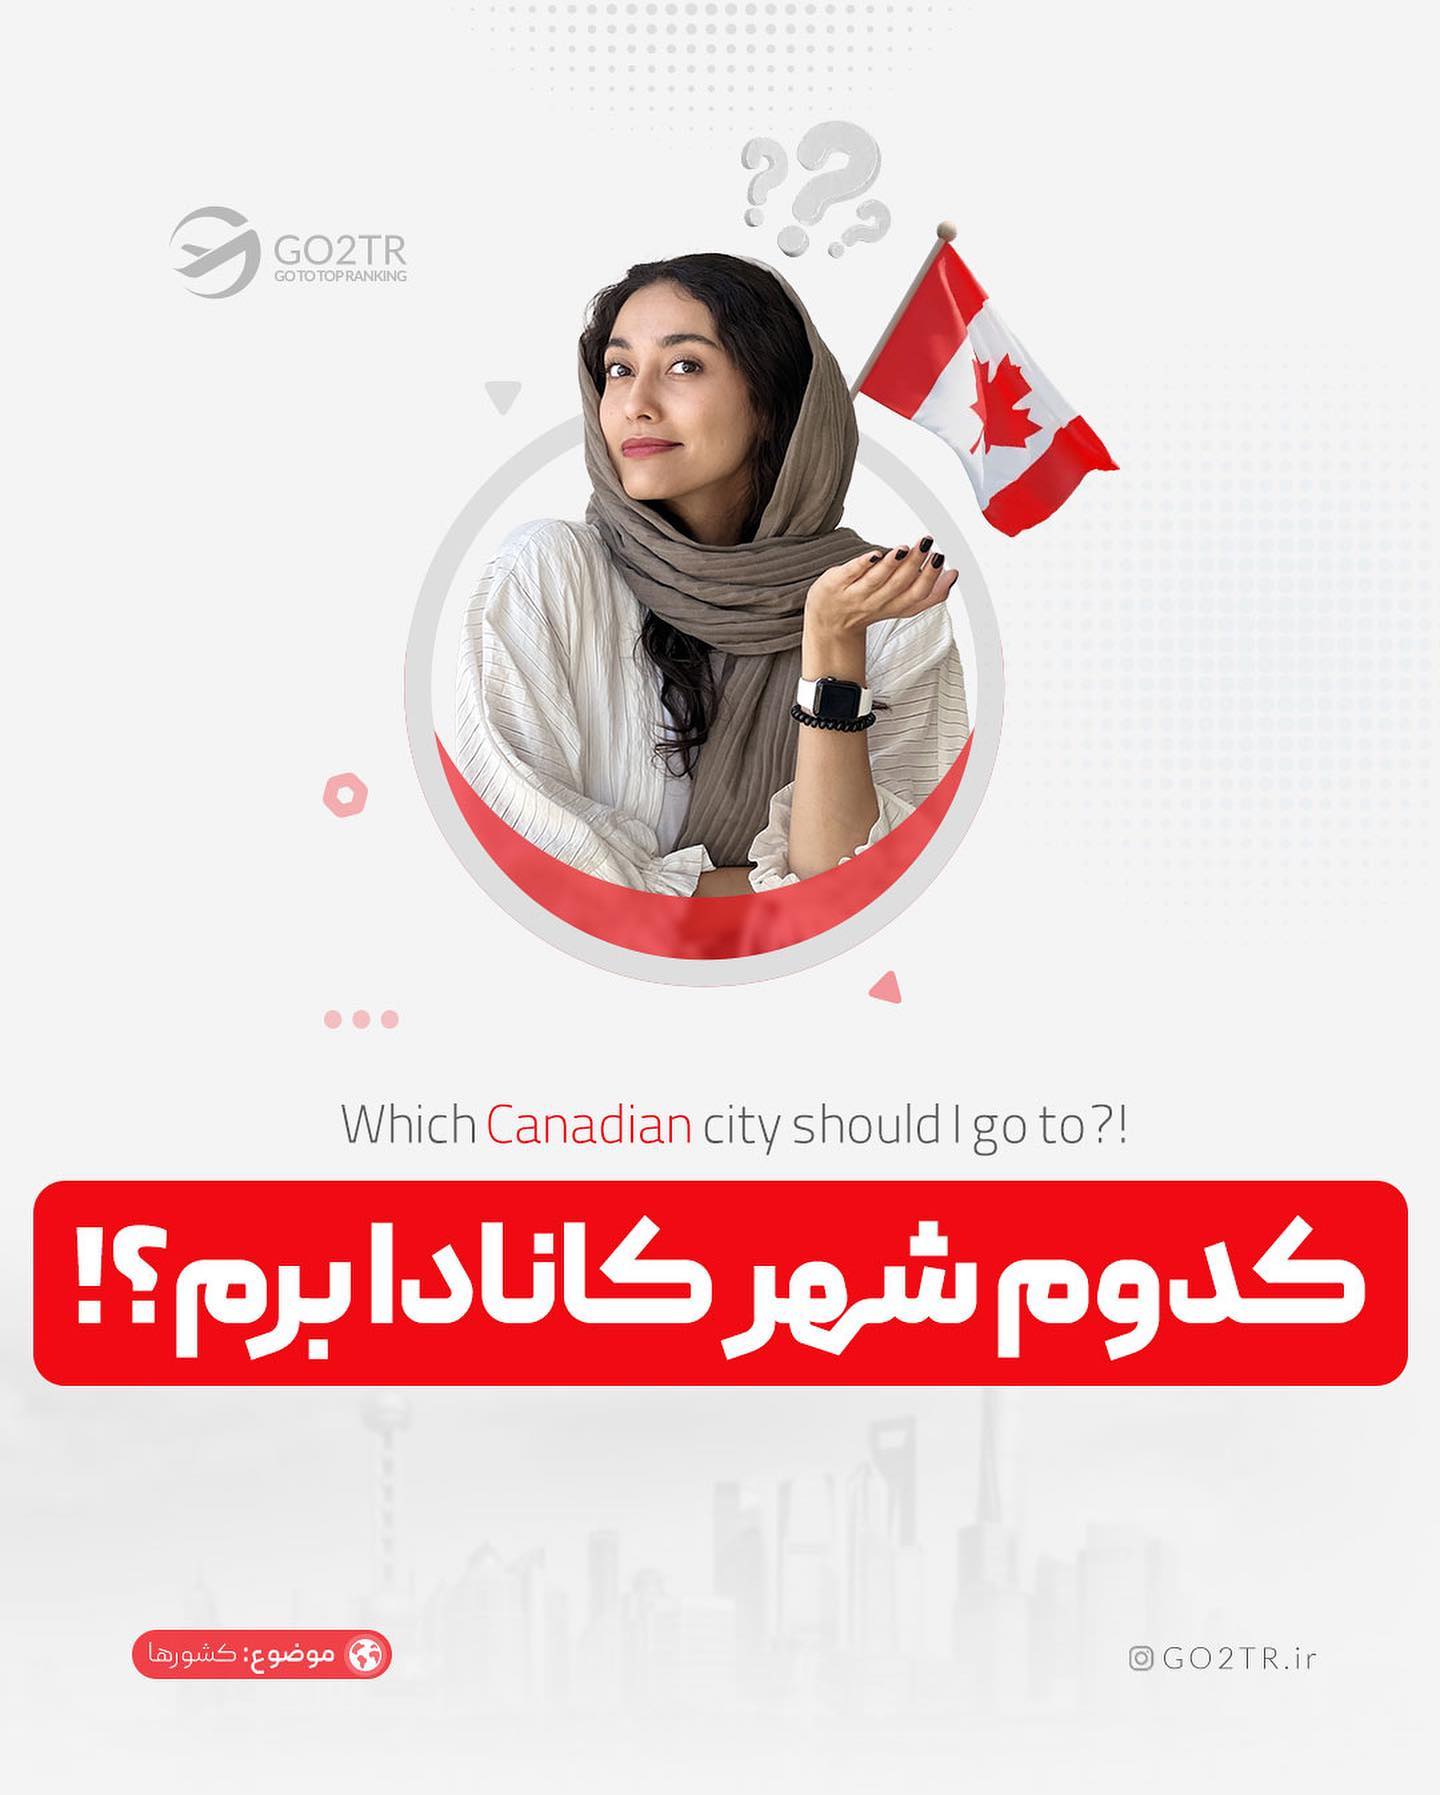 کدوم شهر کانادا میخوای بری؟😍 برای تحصیل همراه با فاند، کانادا یکی از بهترین 